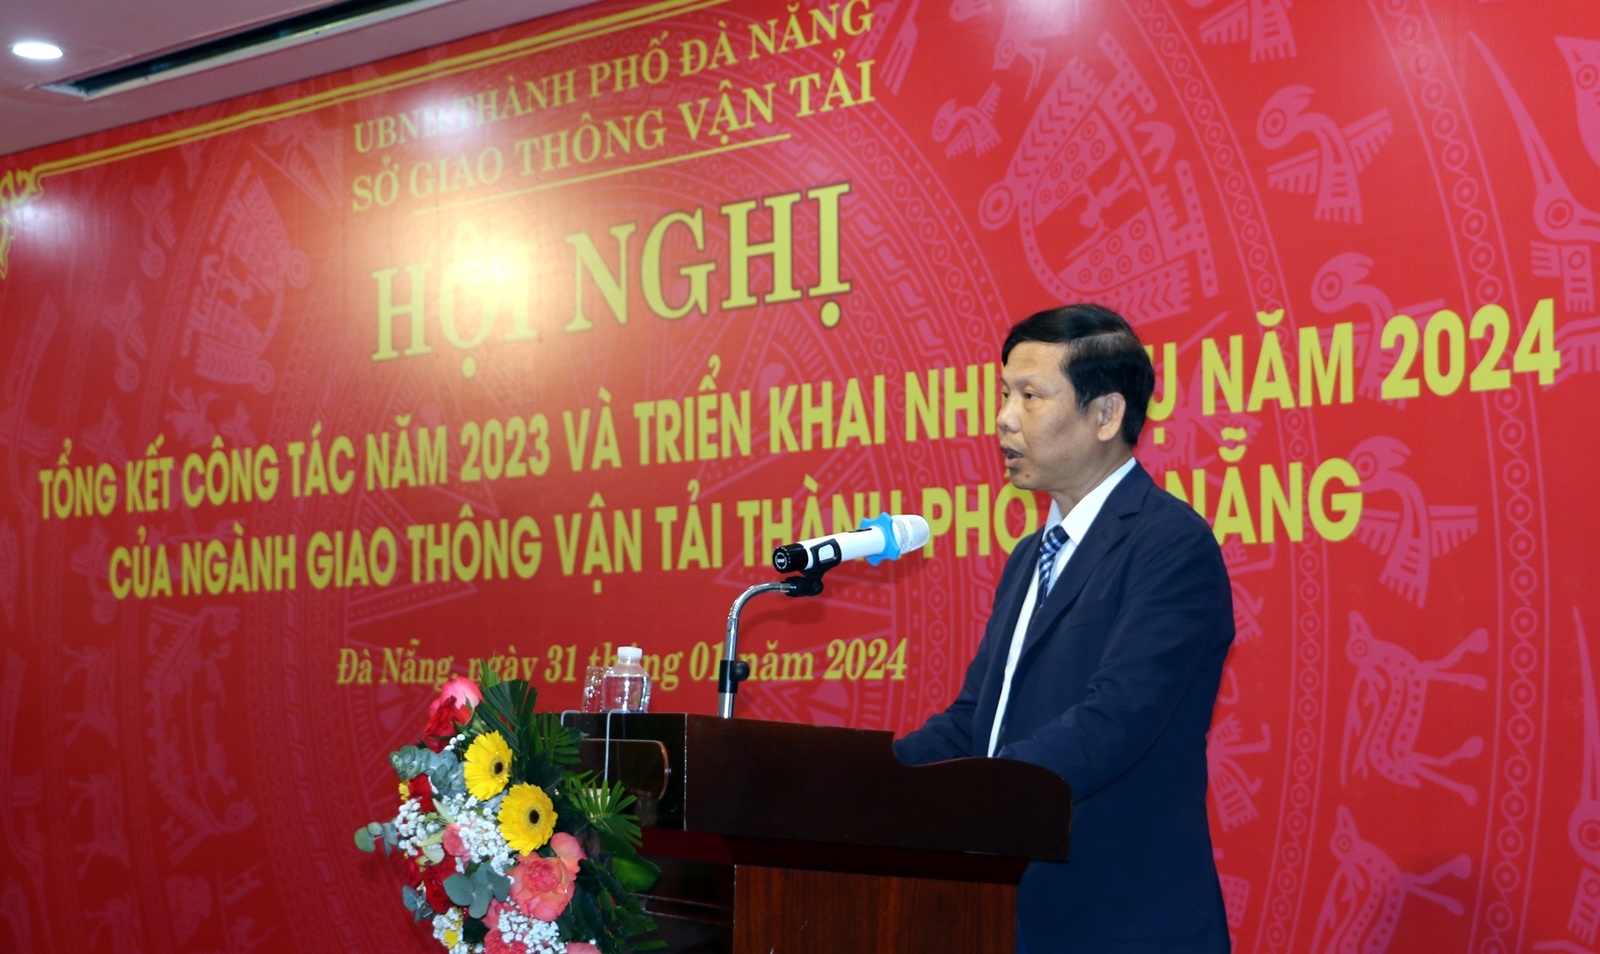 Đà Nẵng sẽ triển khai đầu tư, xây dựng loạt công trình giao thông trong năm 2024- Ảnh 1.